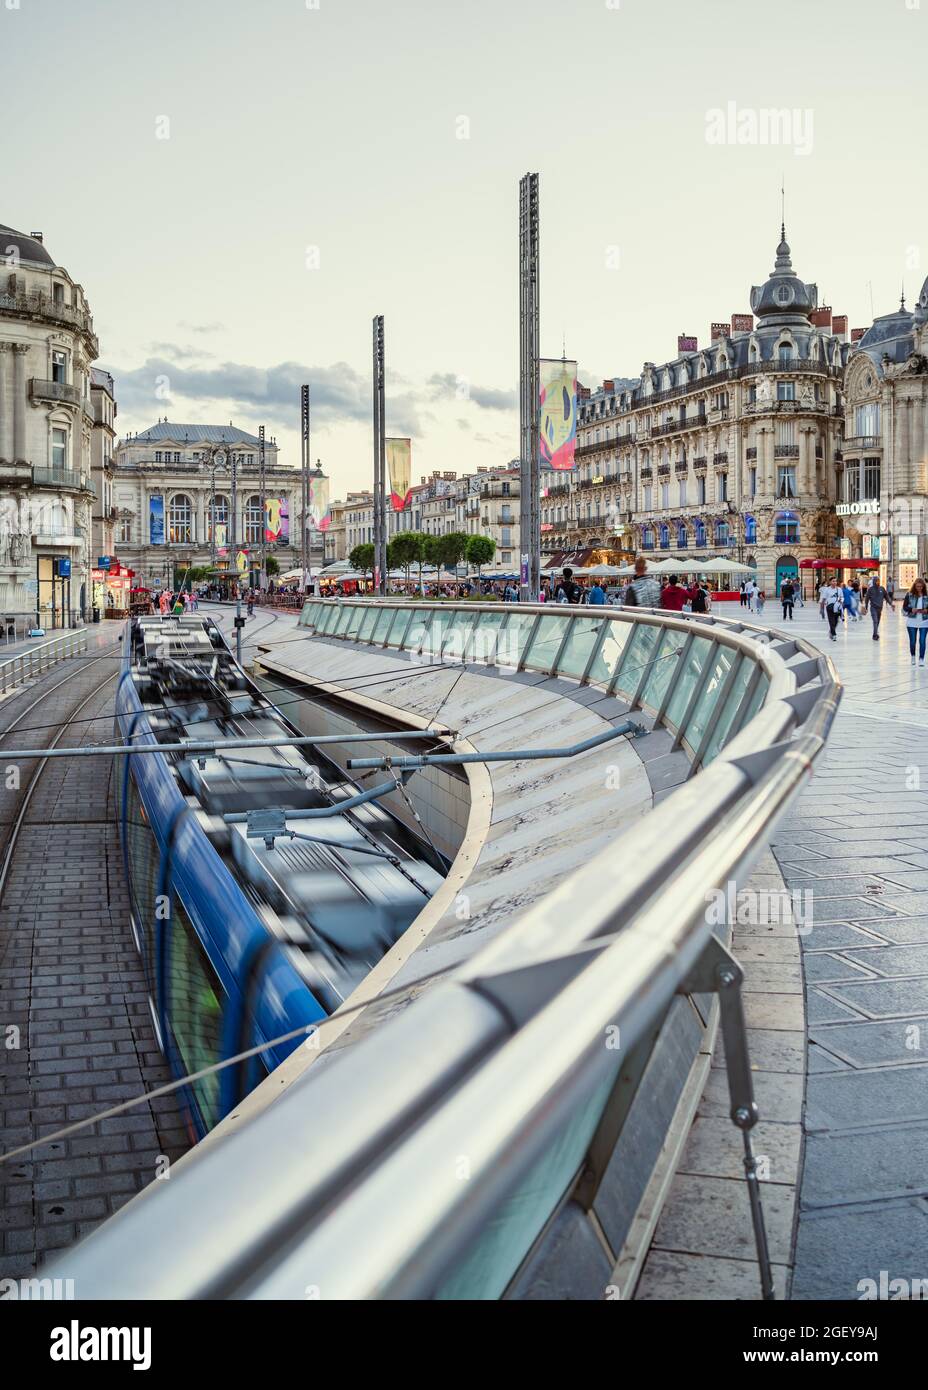 Montpellier, Frankreich, 4. August 2021. Die blaue Straßenbahn kommt am Place de la Comédie in Montpellier an. Aufnahmen mit langsamer Belichtung. Bewegungsunschärfe. Stockfoto